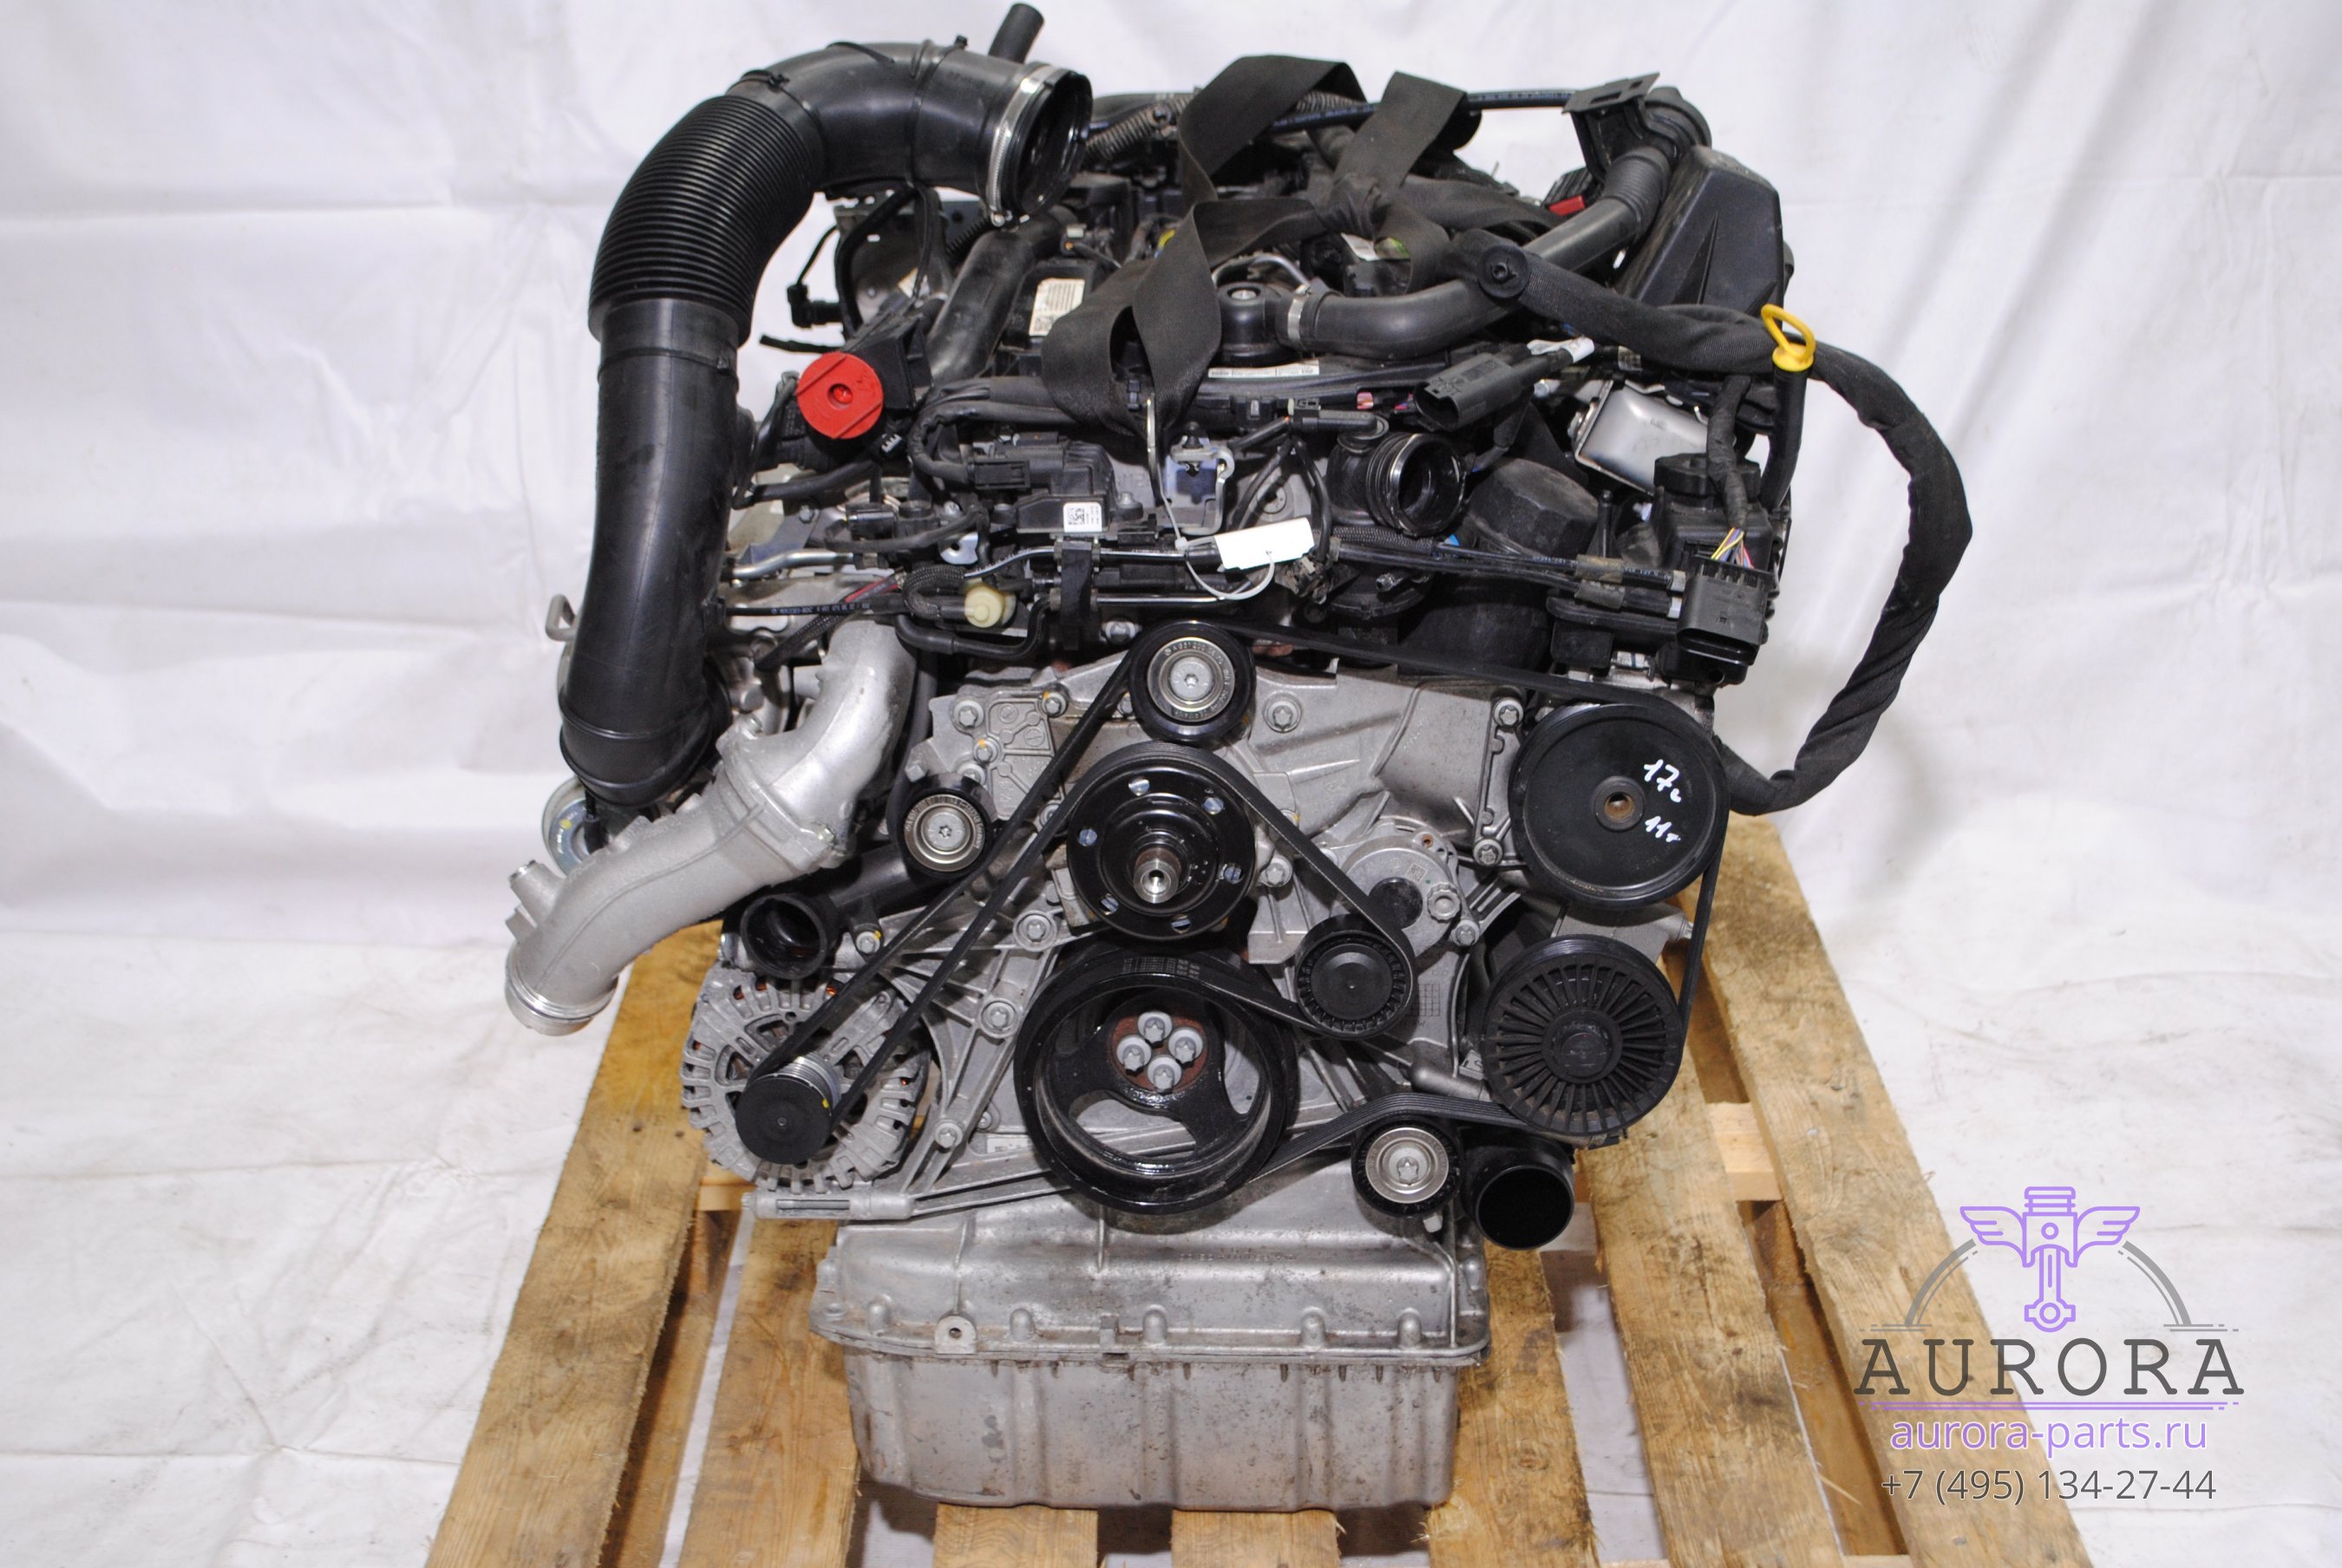 Двигатель в сборе  2.2 CDi OM 651 (17г.в. пробег 11 тыс. км.) без сцепления и вискомуфты.